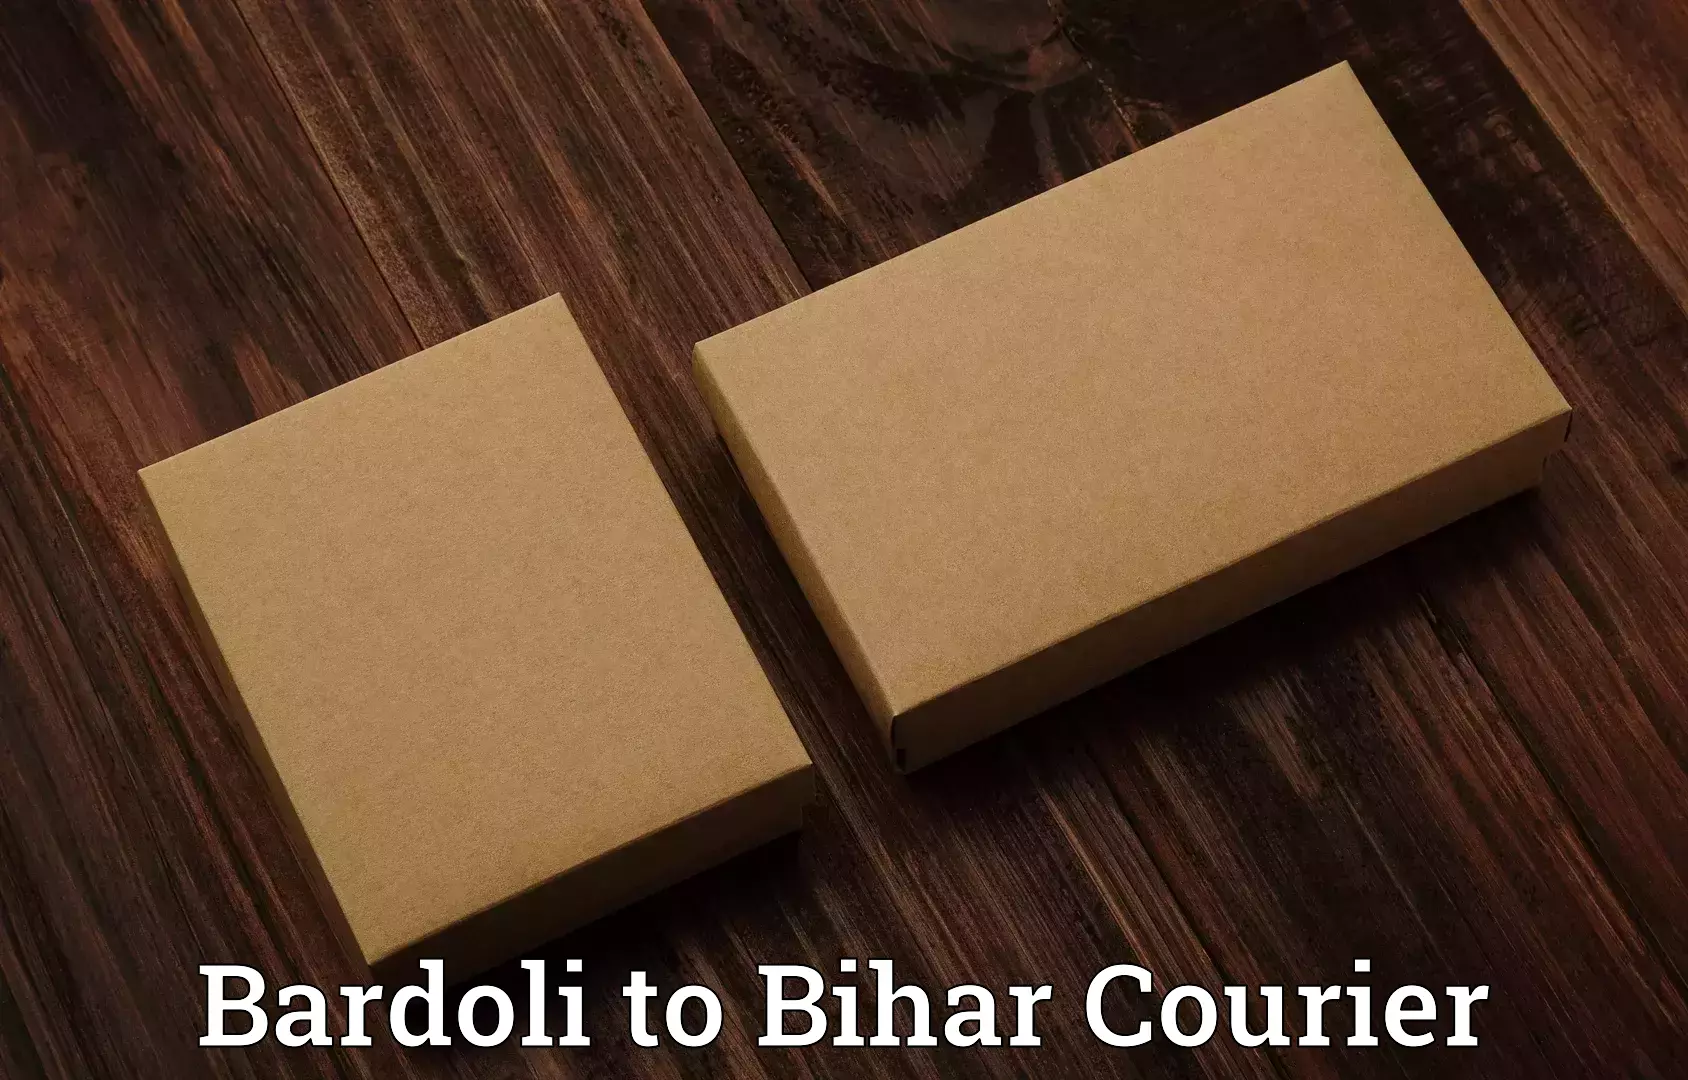 Luggage shipment processing Bardoli to Bihar